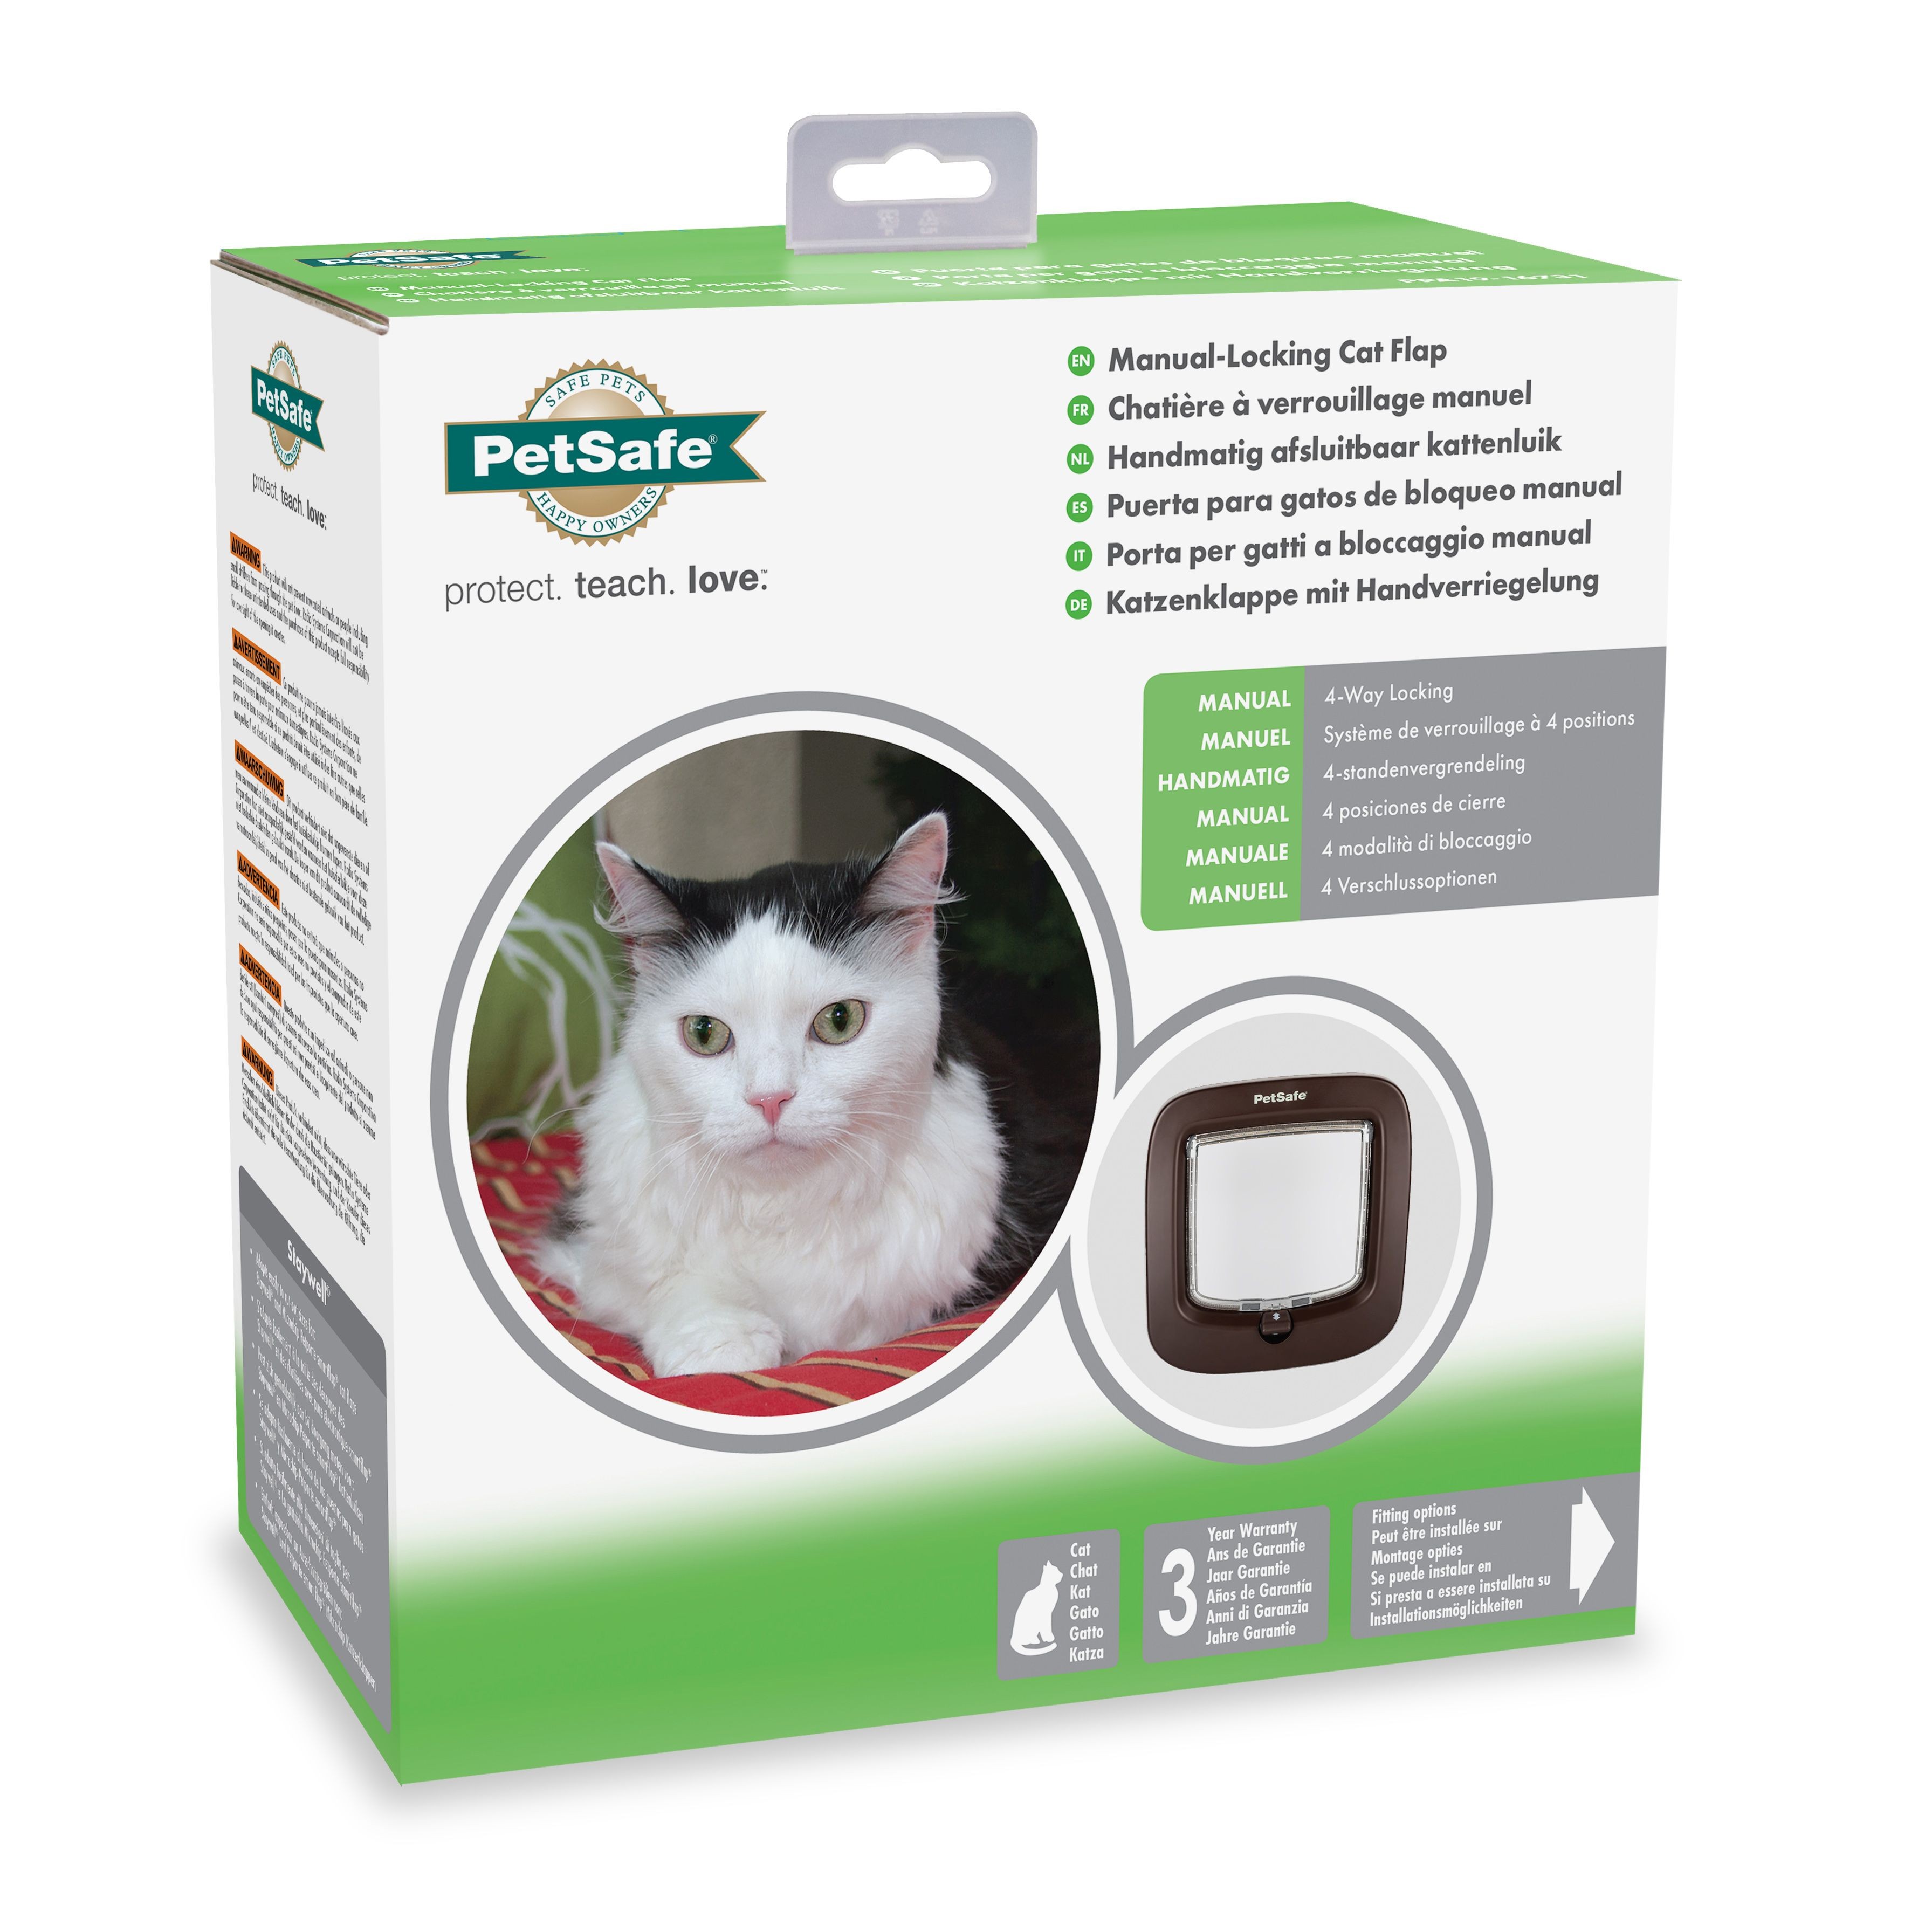 PetSafe Manual-Locking Cat Flap - Brown